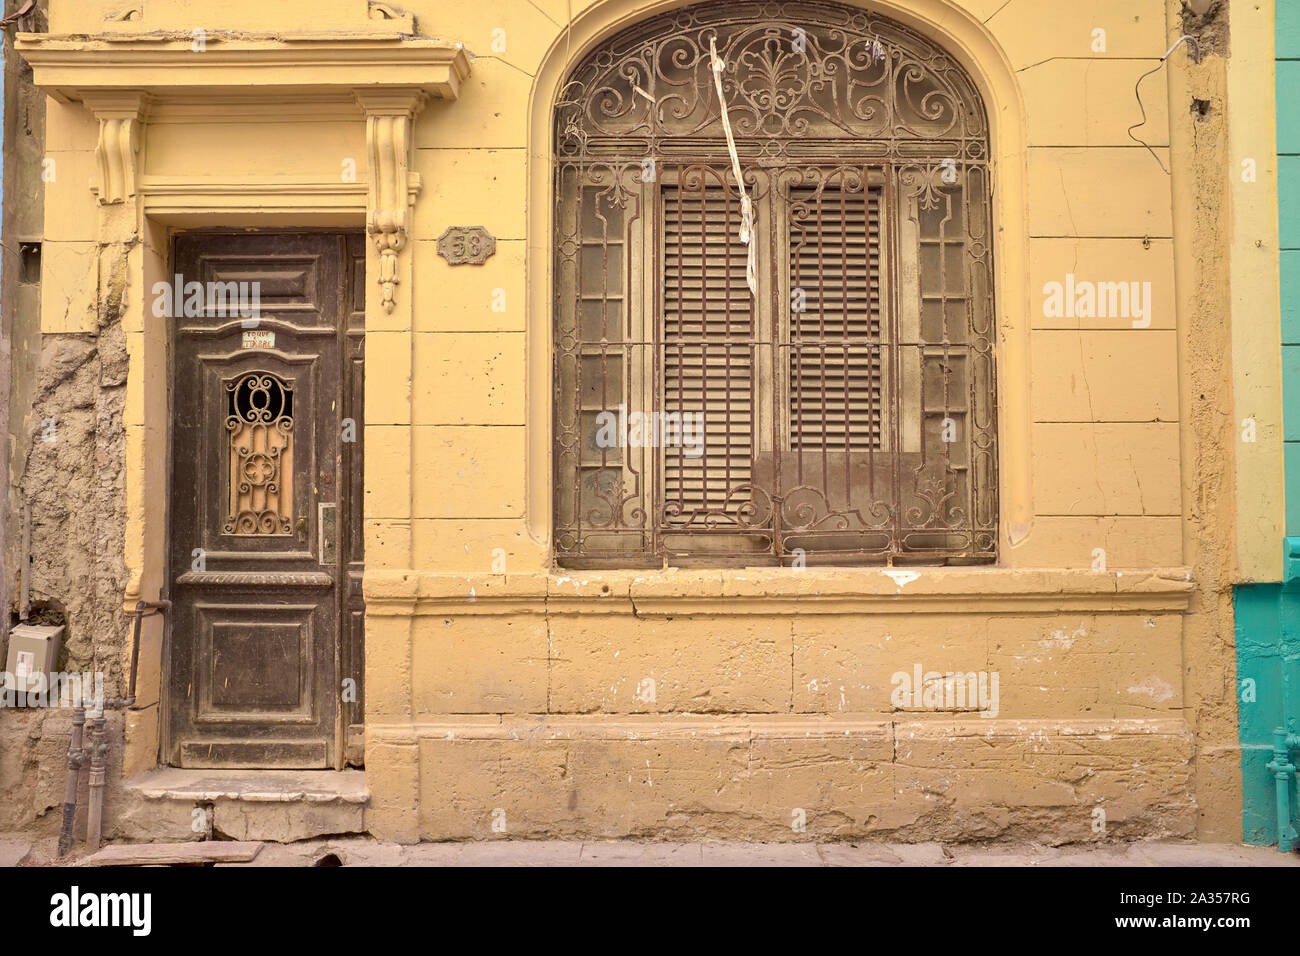 Détail architectural à La Havane, Cuba Banque D'Images